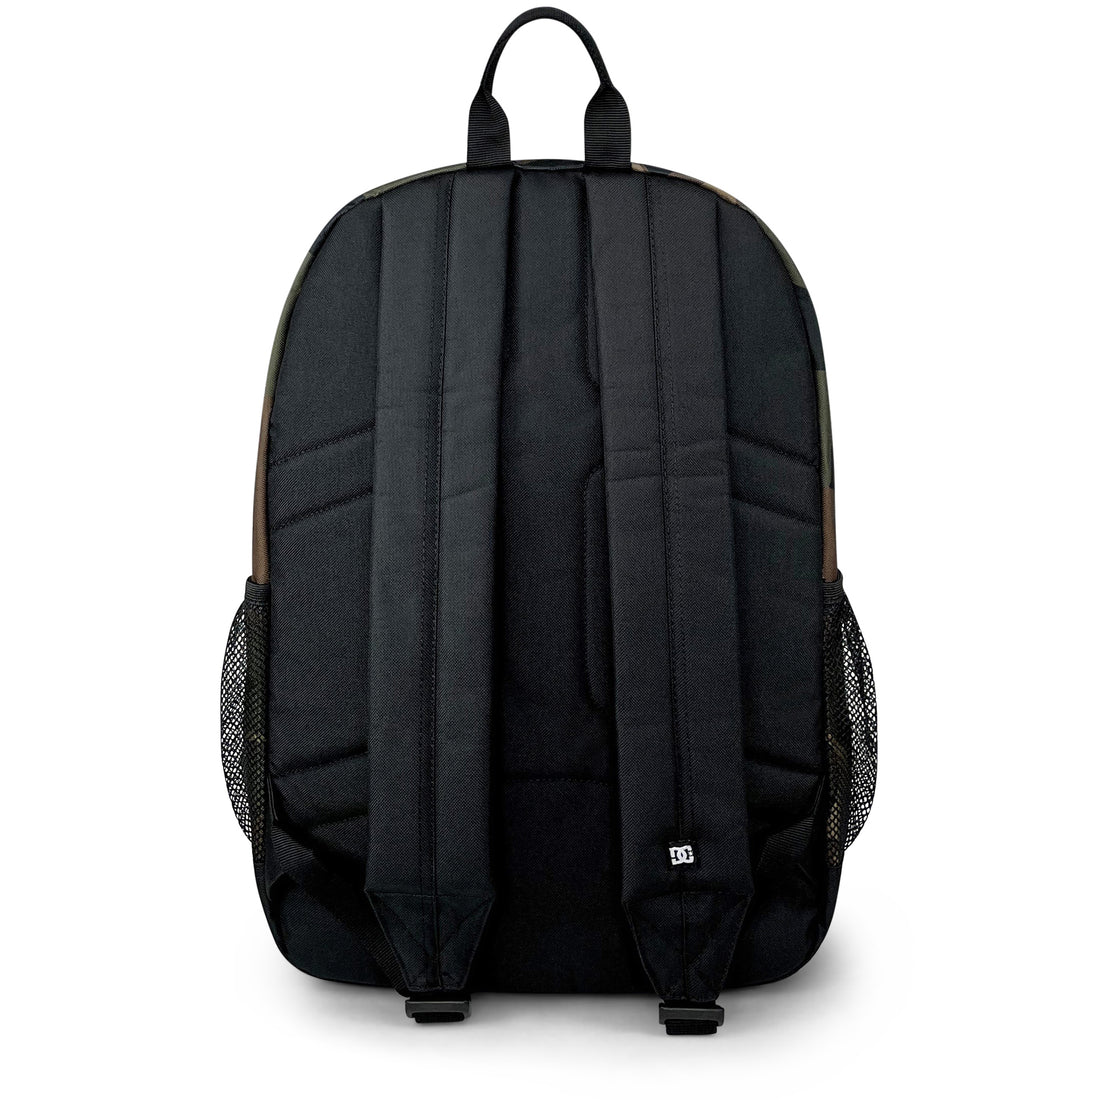 Backsider Backpack 20L